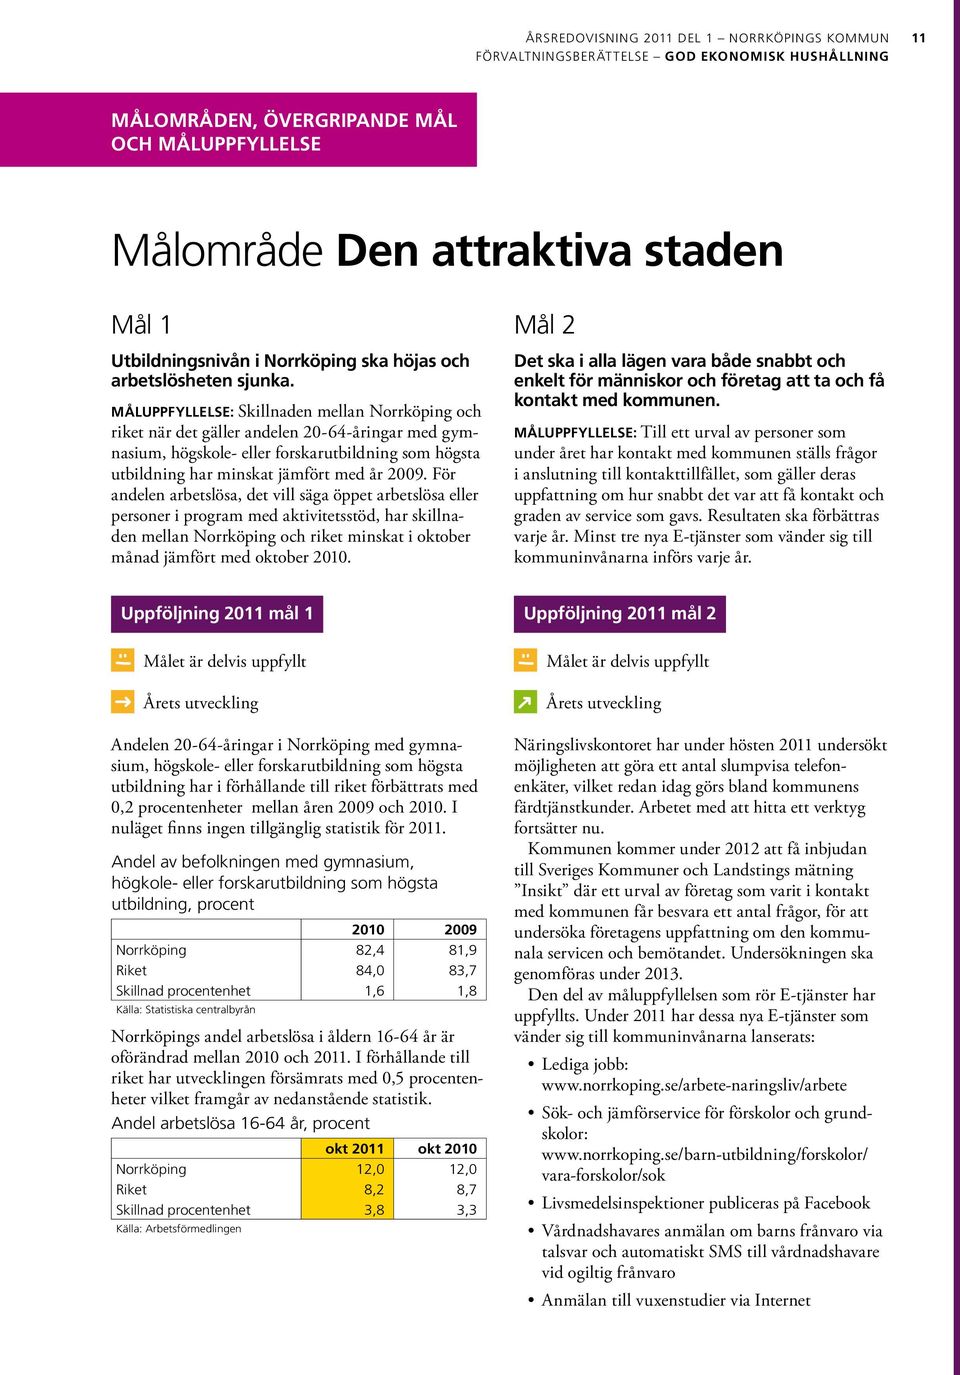 MÅLUPPFYLLELSE: Skillnaden mellan Norrköping och riket när det gäller andelen 20-64-åringar med gymnasium, högskole- eller forskarutbildning som högsta utbildning har minskat jämfört med år 2009.